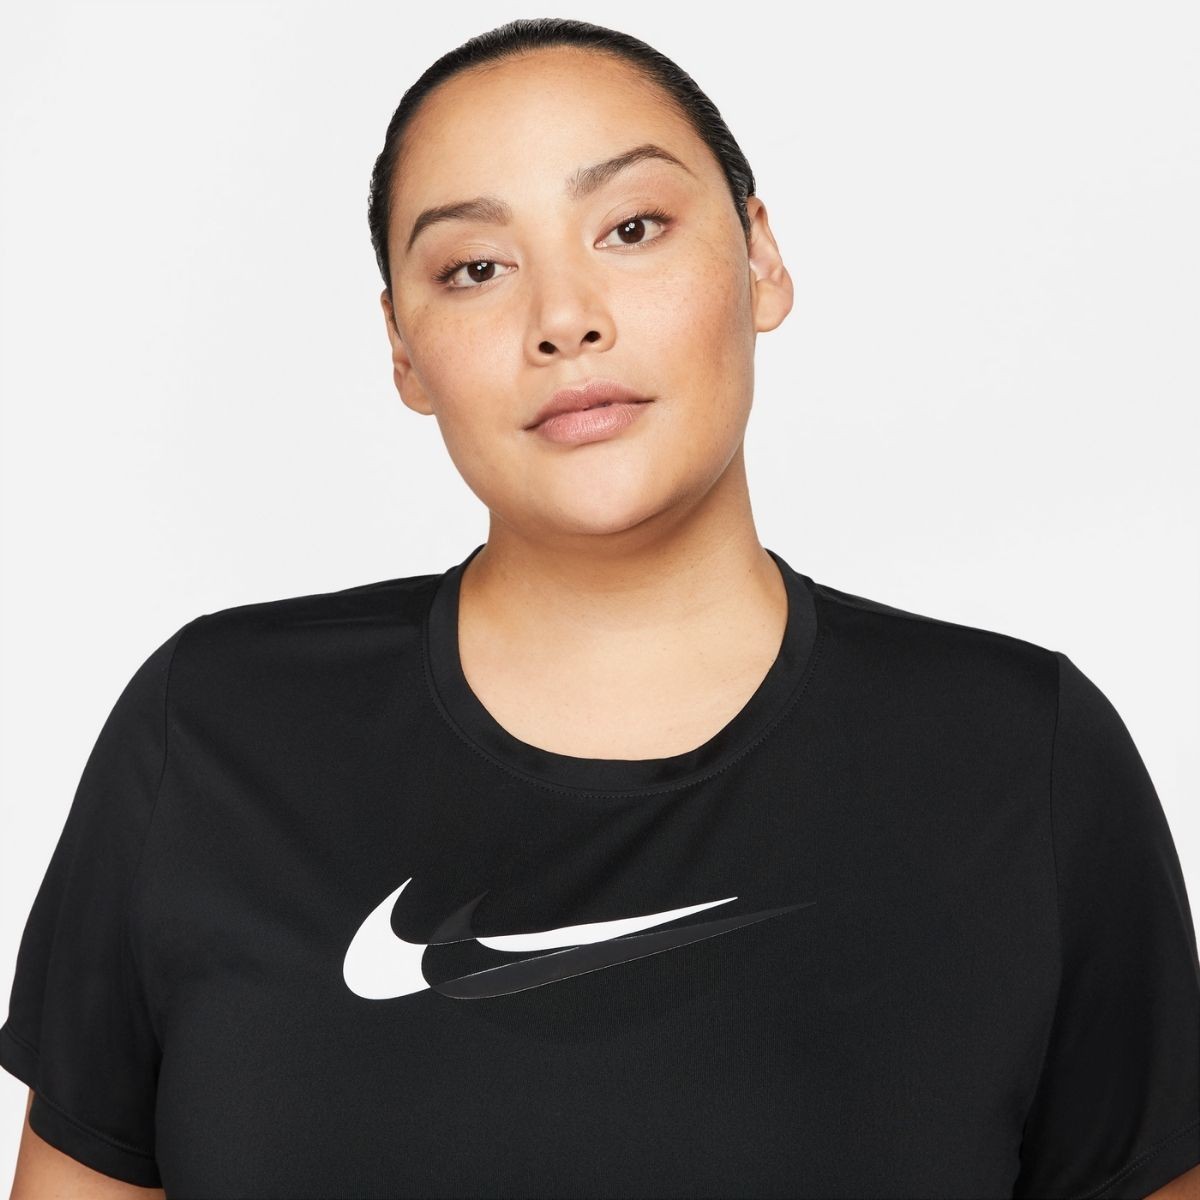 T-shirt Performance Nike Swoosh Run Feminina